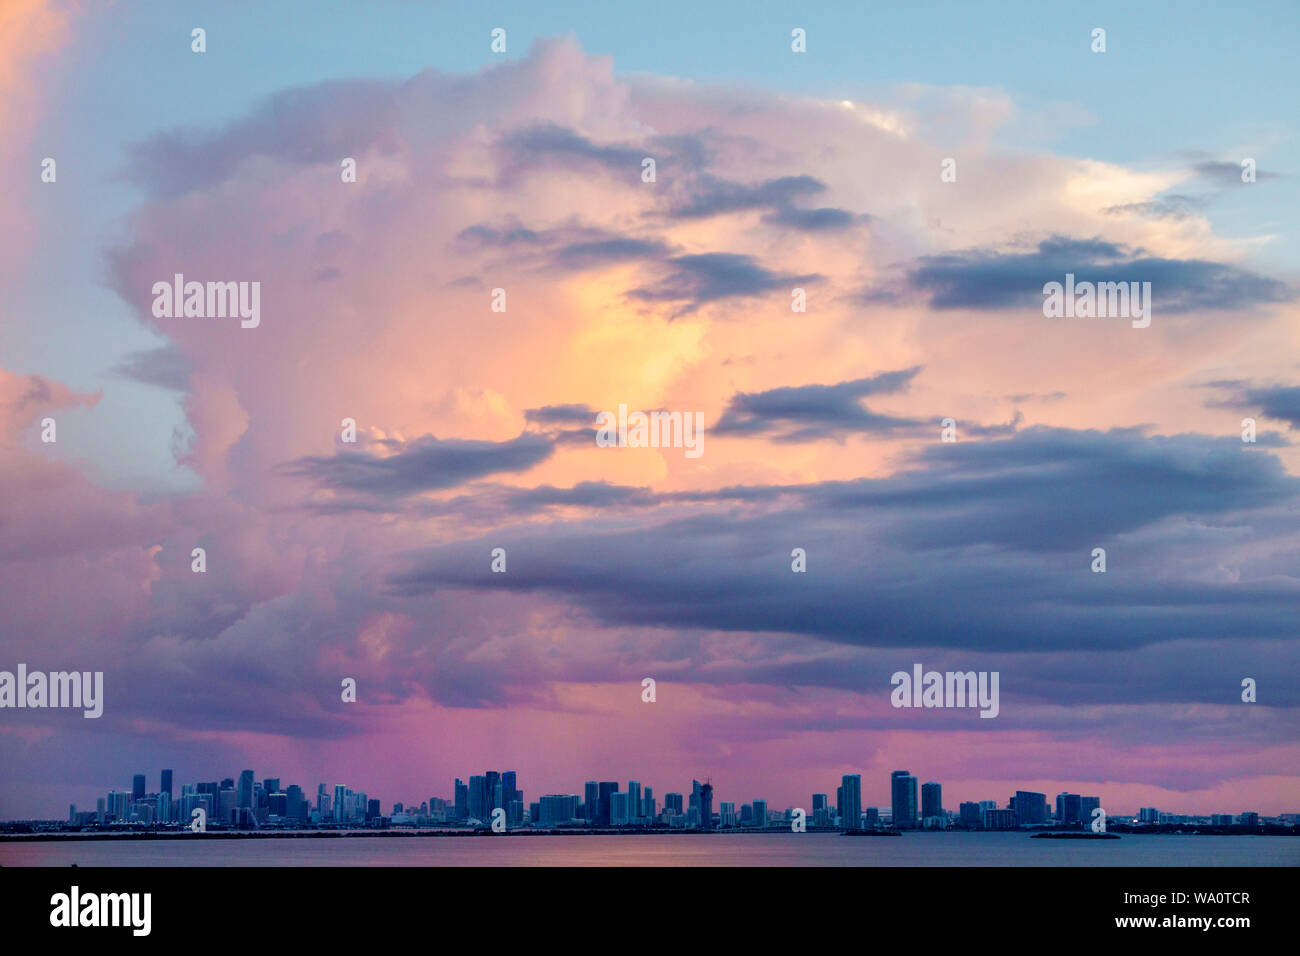 Miami Beach Florida, Biscayne Bay, nubes clima cielo tormenta nubes, lluvia, horizonte de la ciudad, puesta de sol, FL190731013 Foto de stock